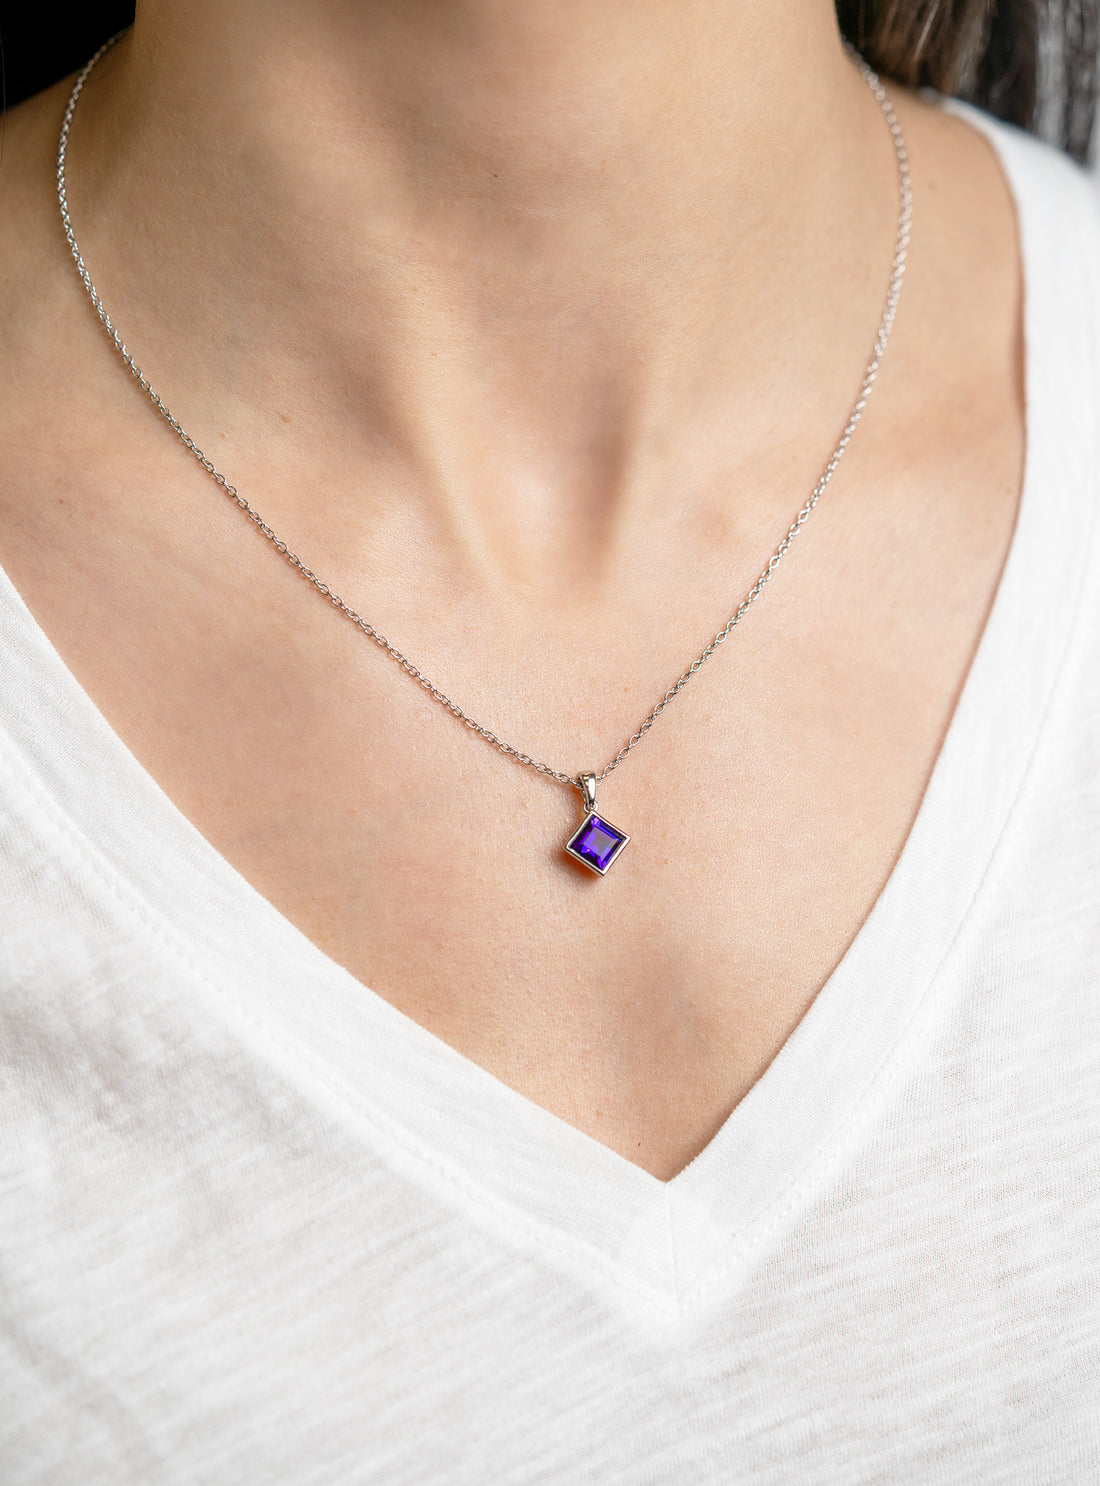 Princess-Cut Amethyst Necklace - Skeie's Jewelers